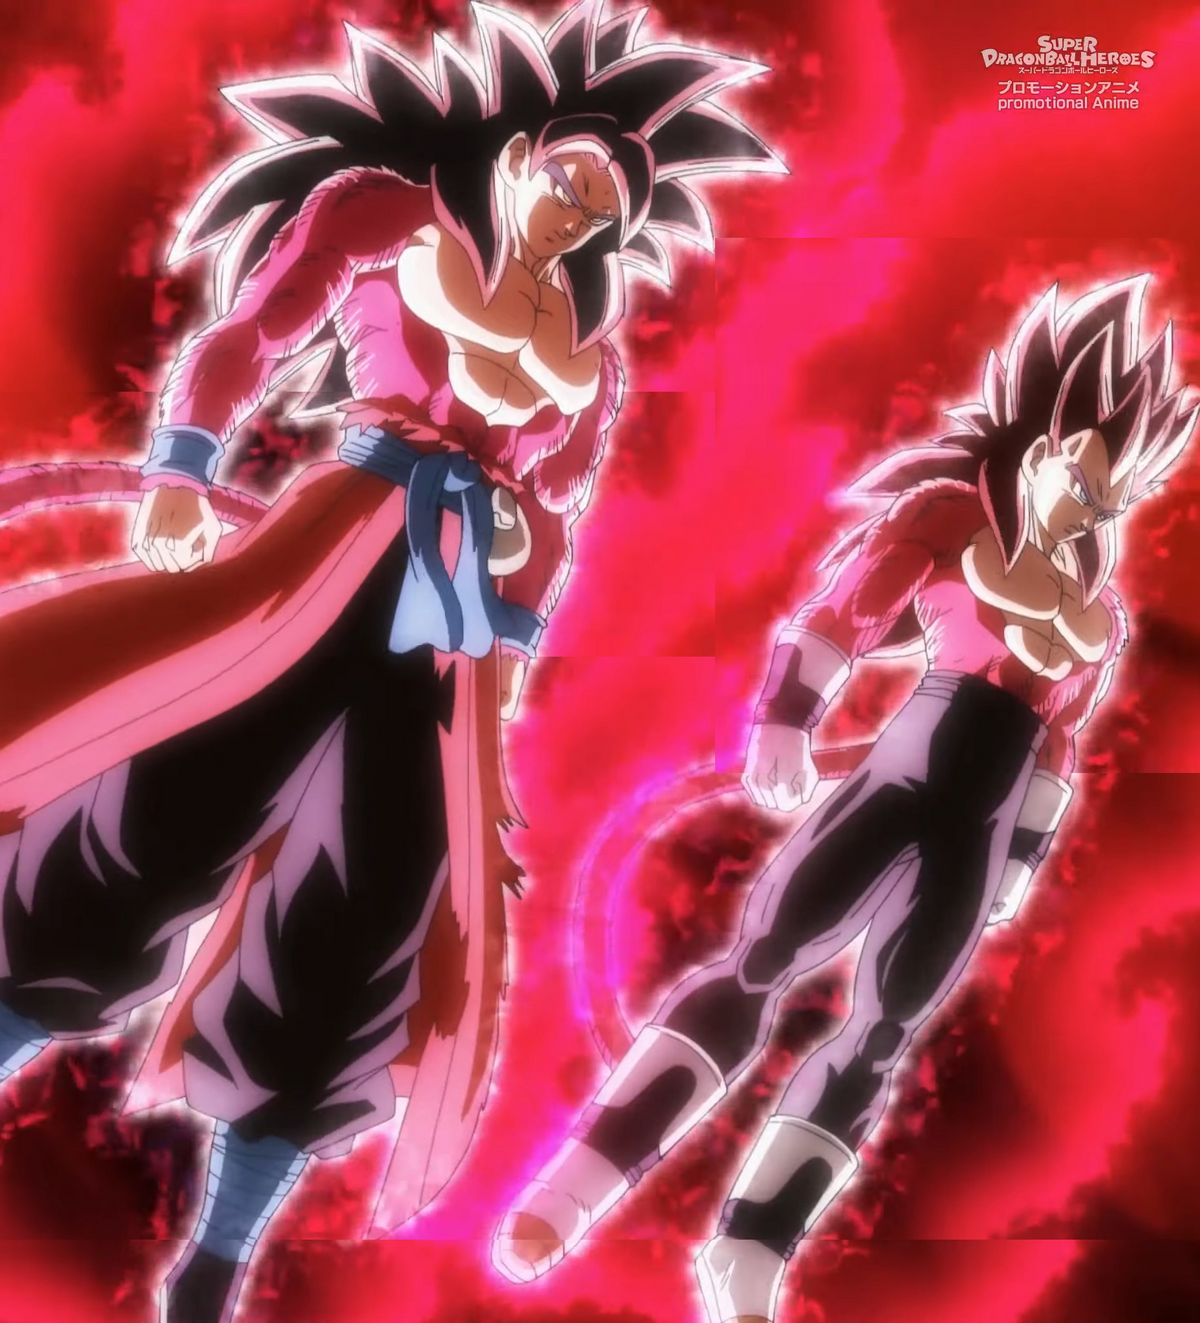 DBSExclusive - Goku SSB vs. SSJ4 Limit Breaker Goku 